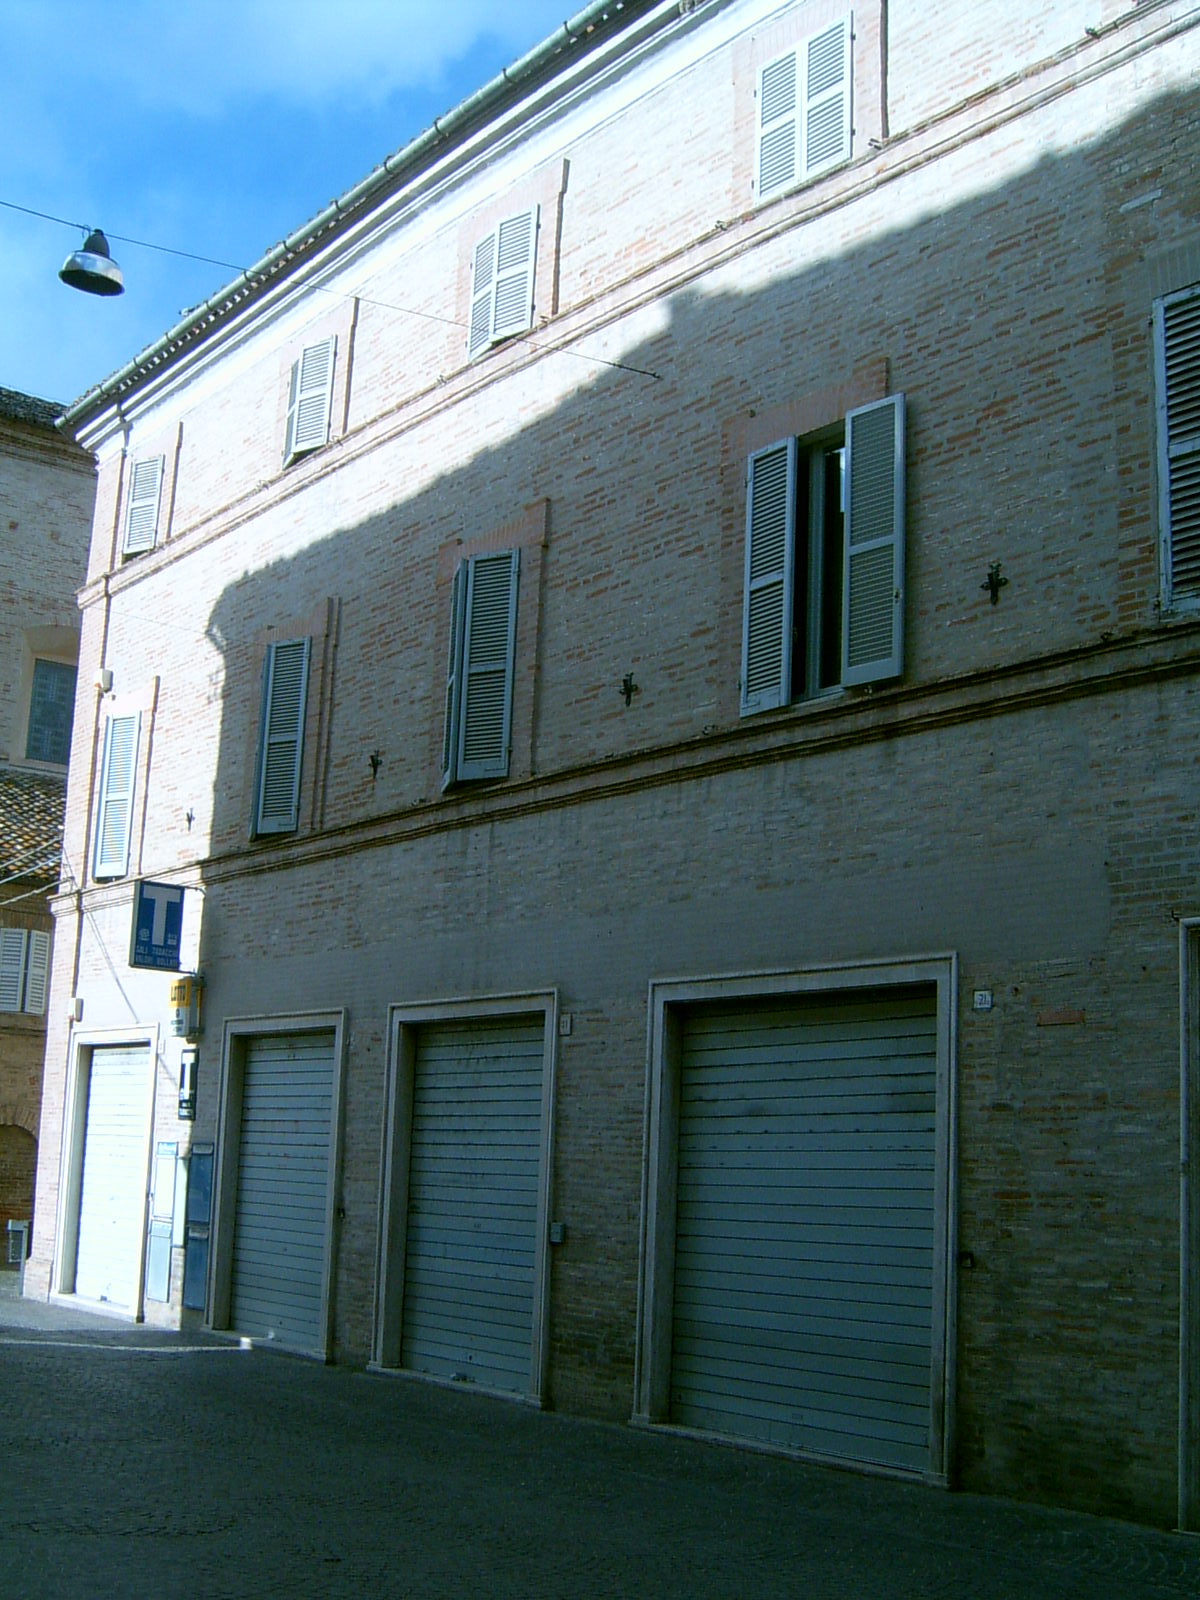 Palazzo nobiliare (palazzo, nobiliare) - Servigliano (AP) 